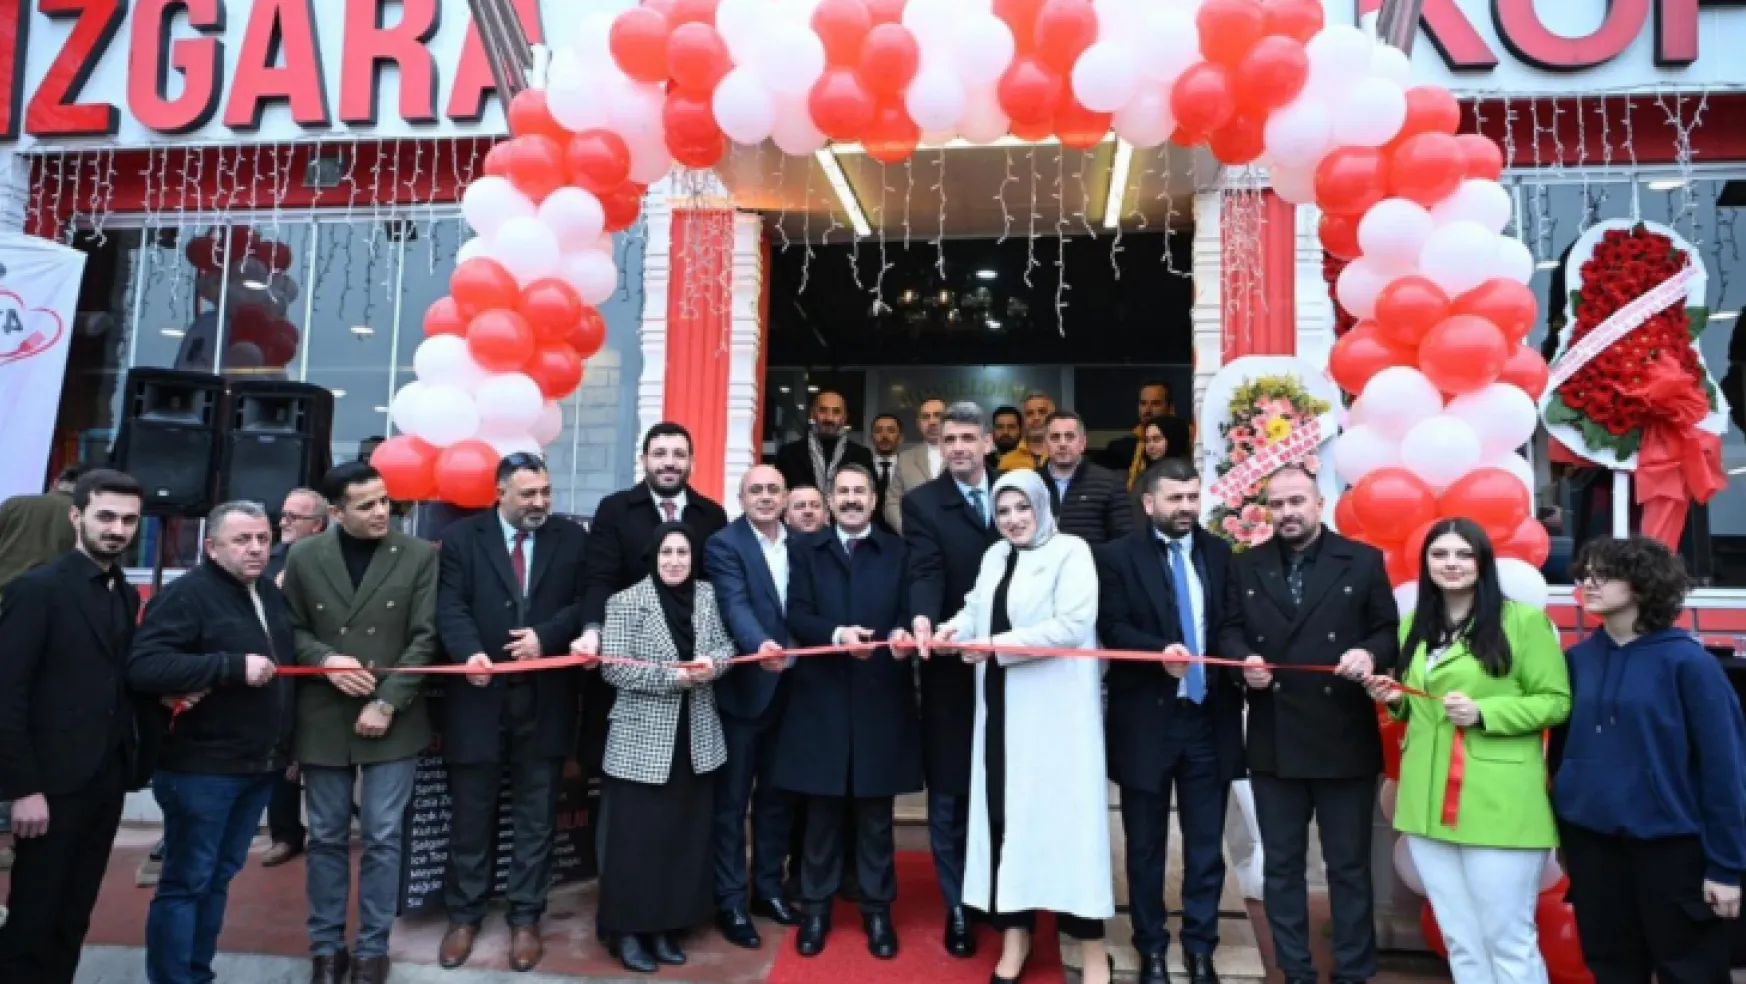 41 Izgara Yusuf Usta Köseköy'de açıldı